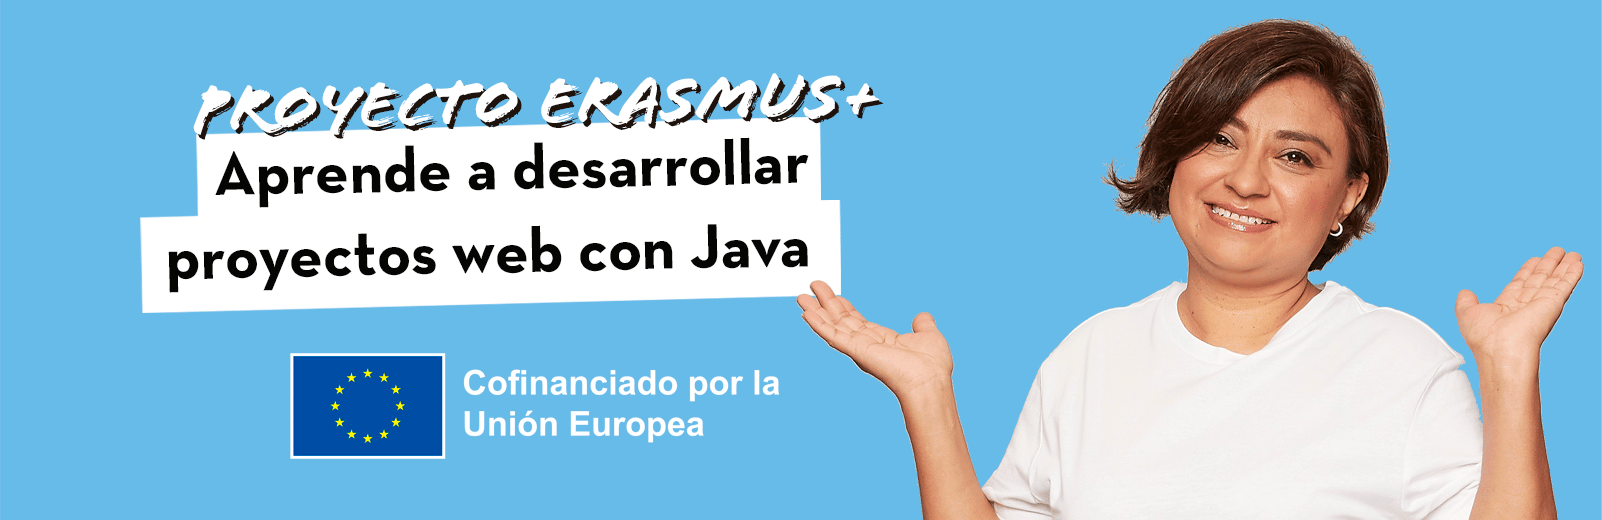 Curso de programación en Java, aprende a desarrollar proyectos web con Java gracias al proyecto Erasmus plus digital school. Cofinanciado por la Unión Europea